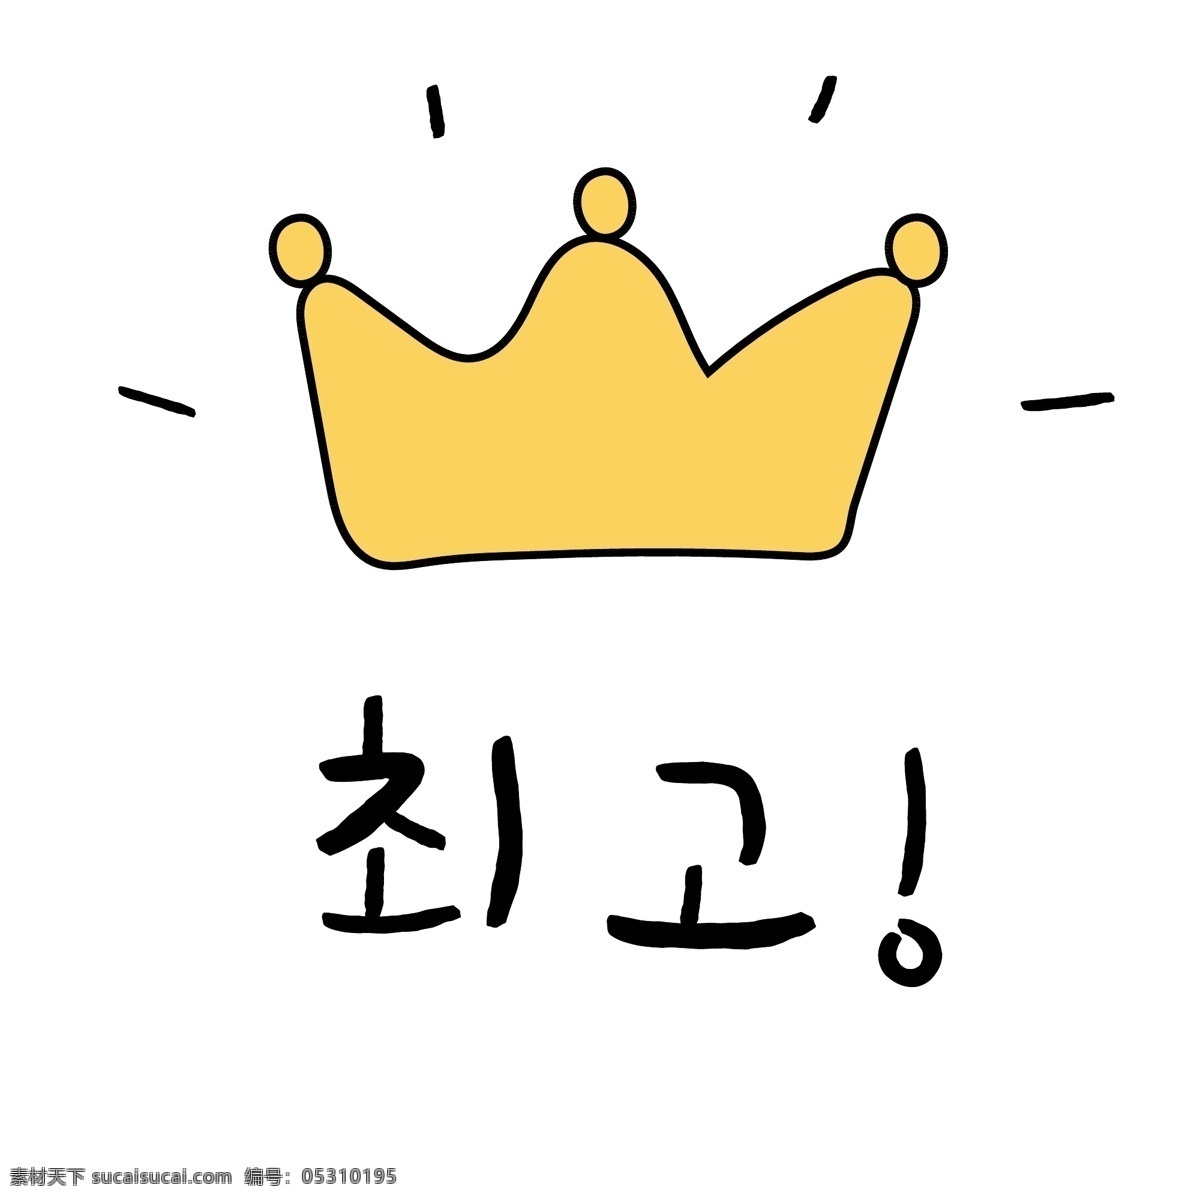 黄色 黄冠 最高 韩国 常用语 肝药 名黄色 钓鱼鱼 漫画 小的 向量 日常用语 卡通